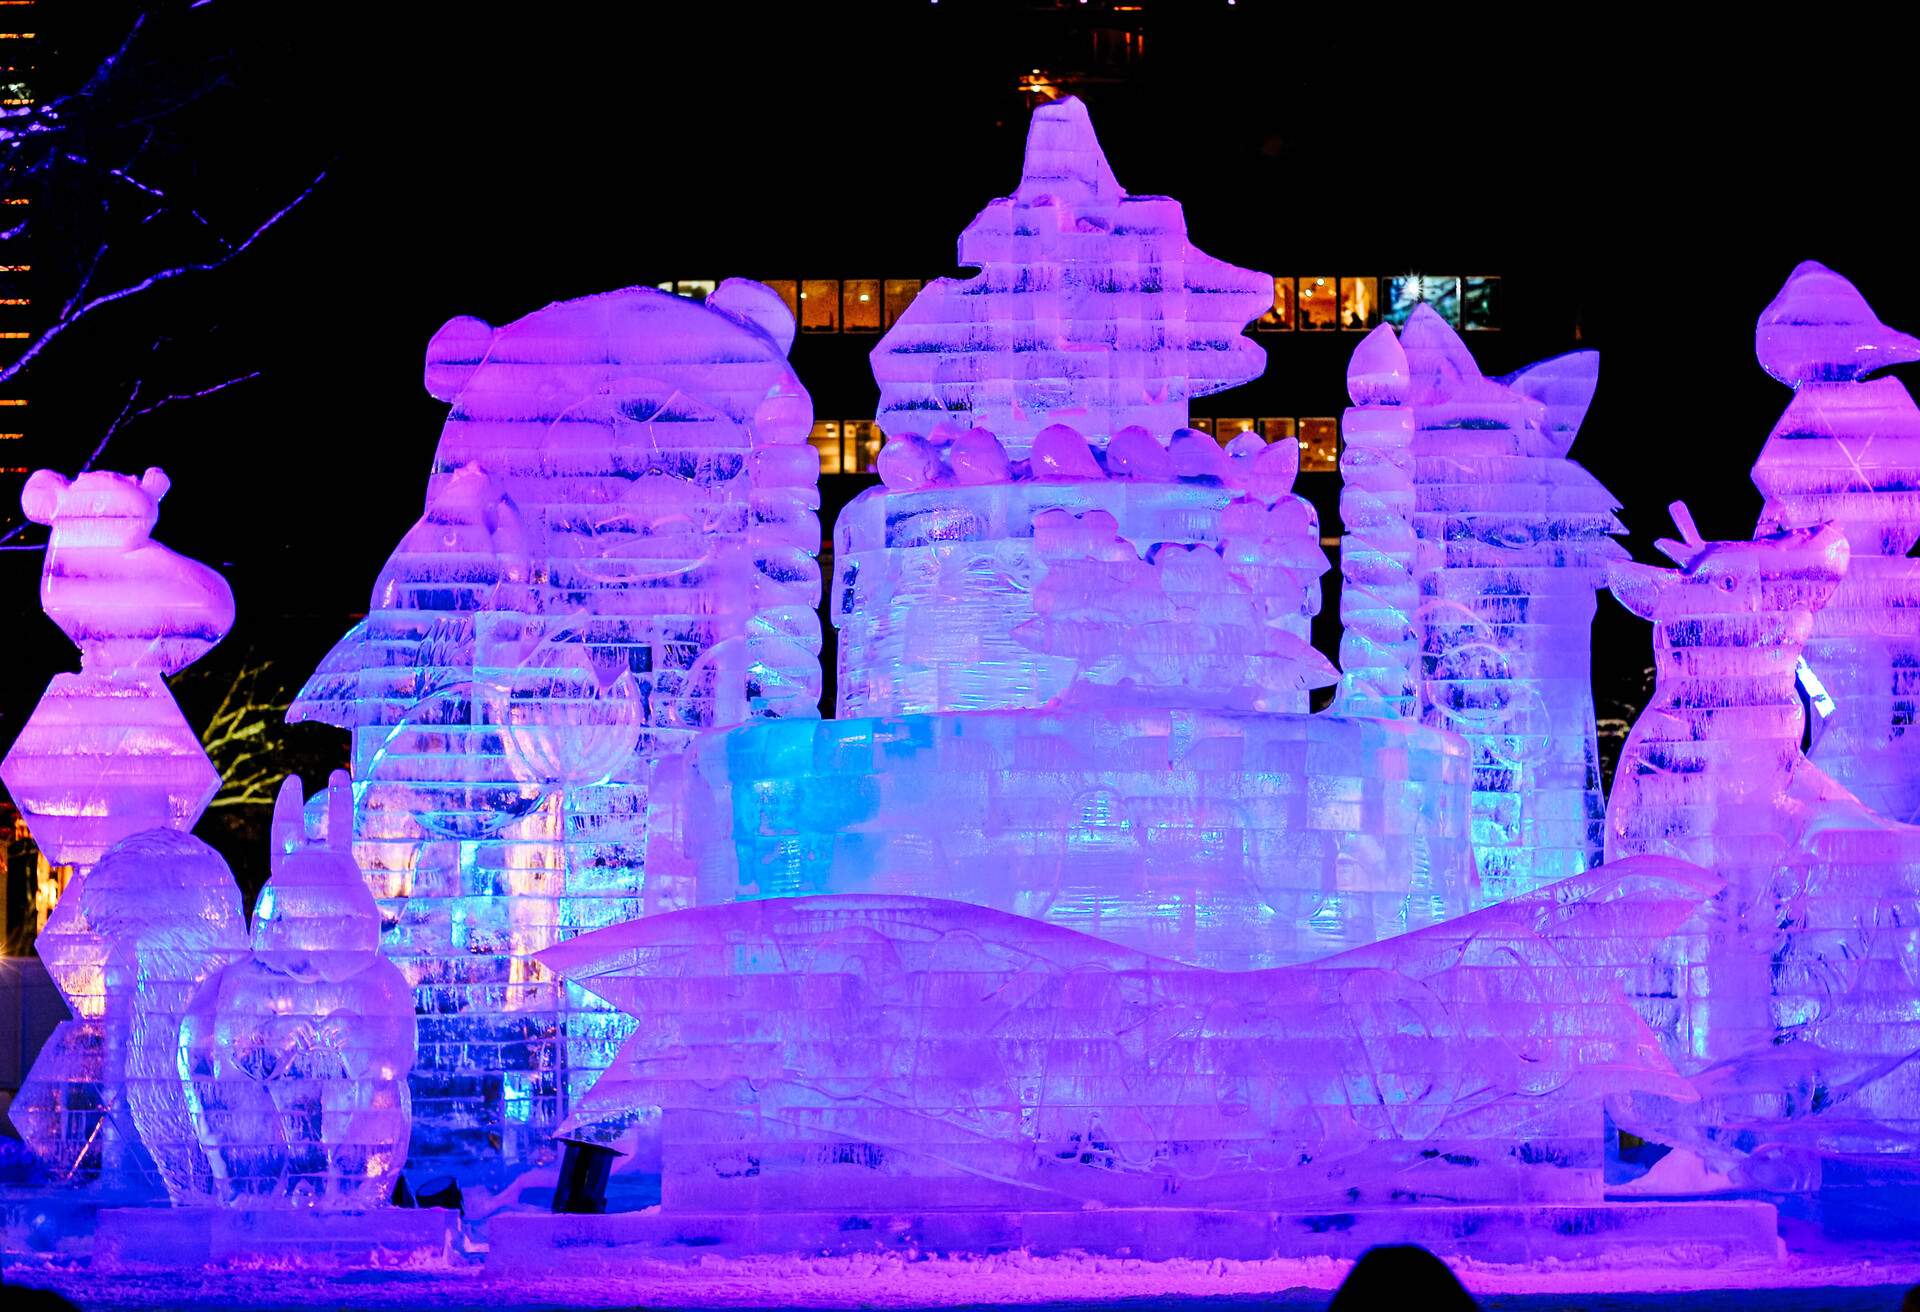 Illuminated ice sculptures of various animals.